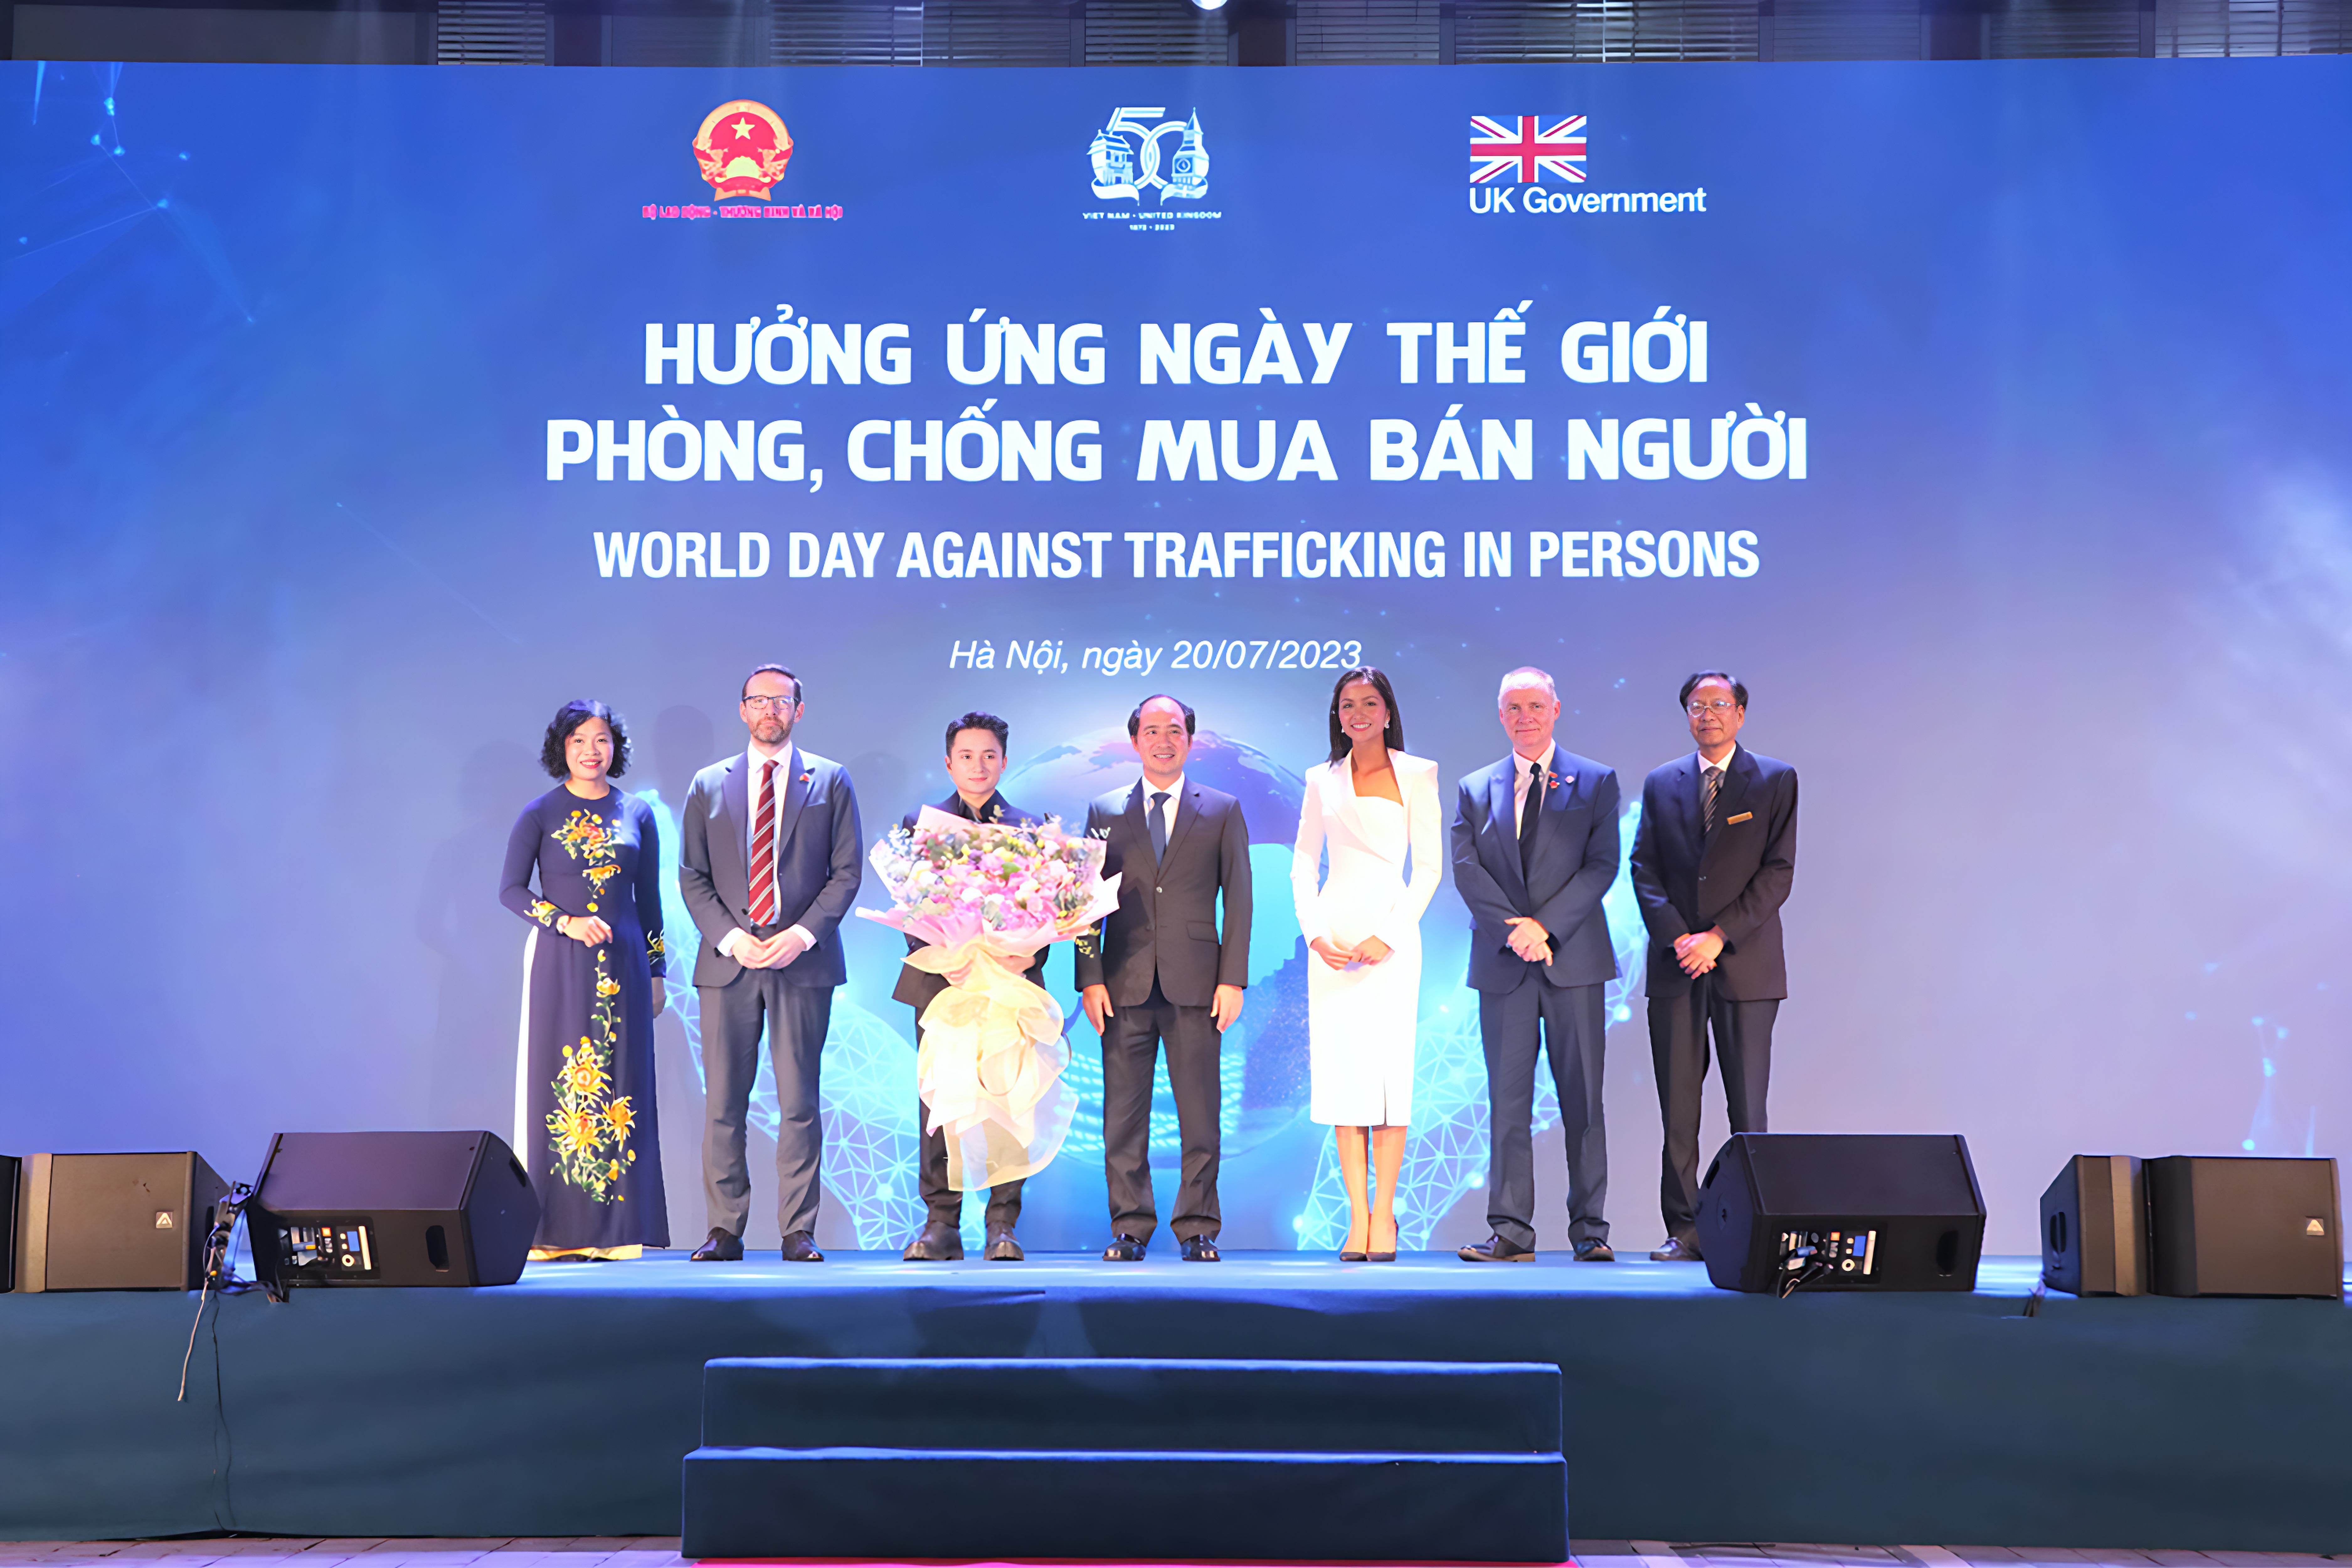 Thứ trưởng Nguyễn Văn Hồi: Chúng ta không thể để tội ác mua bán người vẫn tiếp diễn